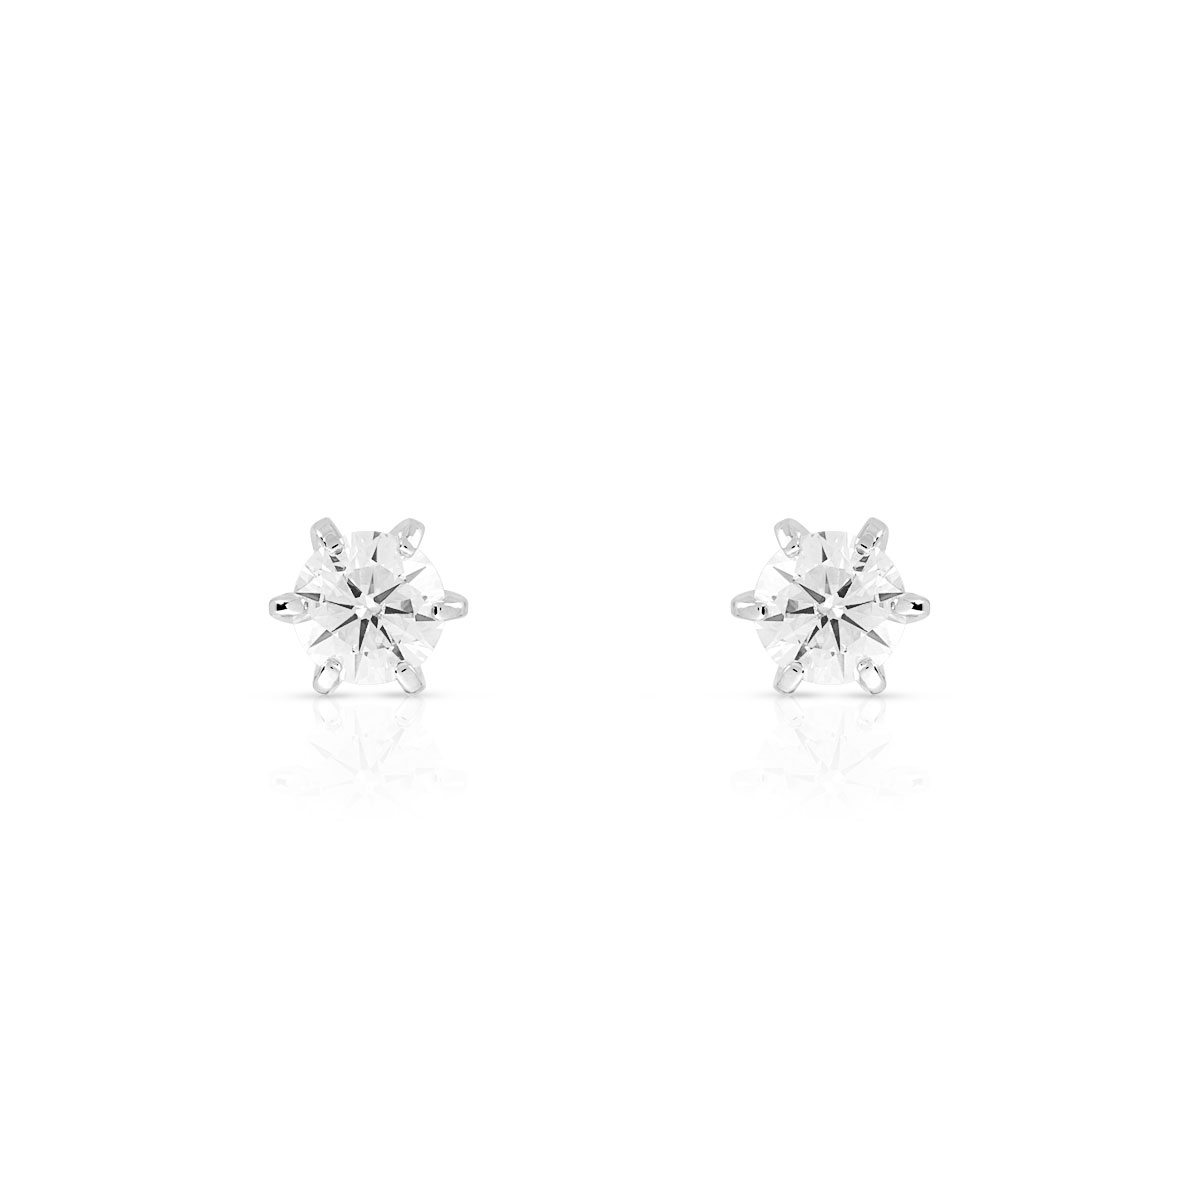 Boucles d'oreilles or 750 blanc diamants synthétiques 0.40 carat